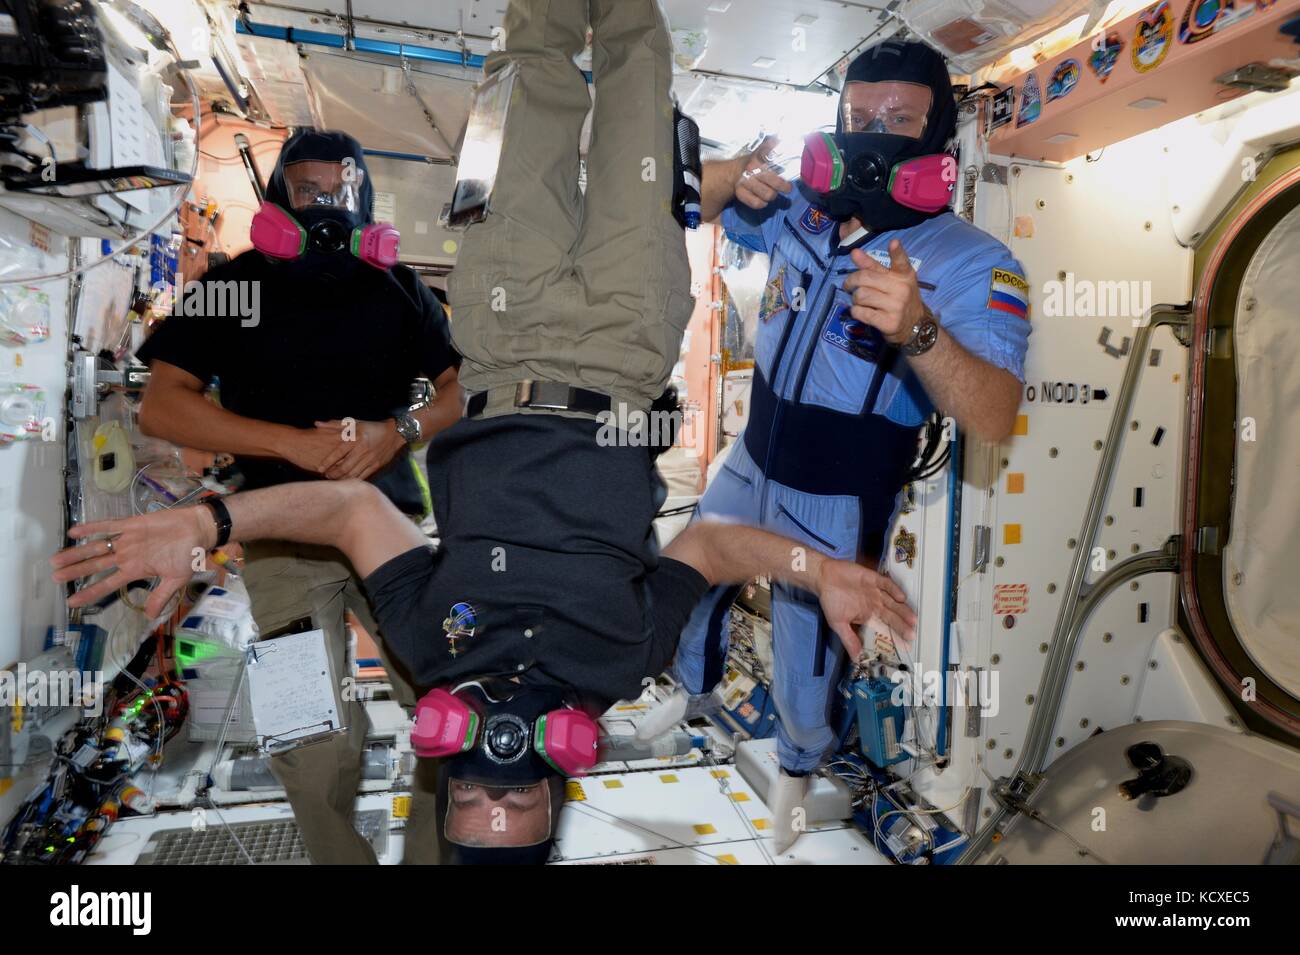 La Nasa expedition 53 membri di equipaggio astronauti americani joe acaba, centro, mark vande hei, sinistro e il cosmonauta russo sasha misurkin pratica esercitazioni di sicurezza a bordo della Stazione spaziale internazionale mentre in orbita il 25 settembre 2017. Foto Stock